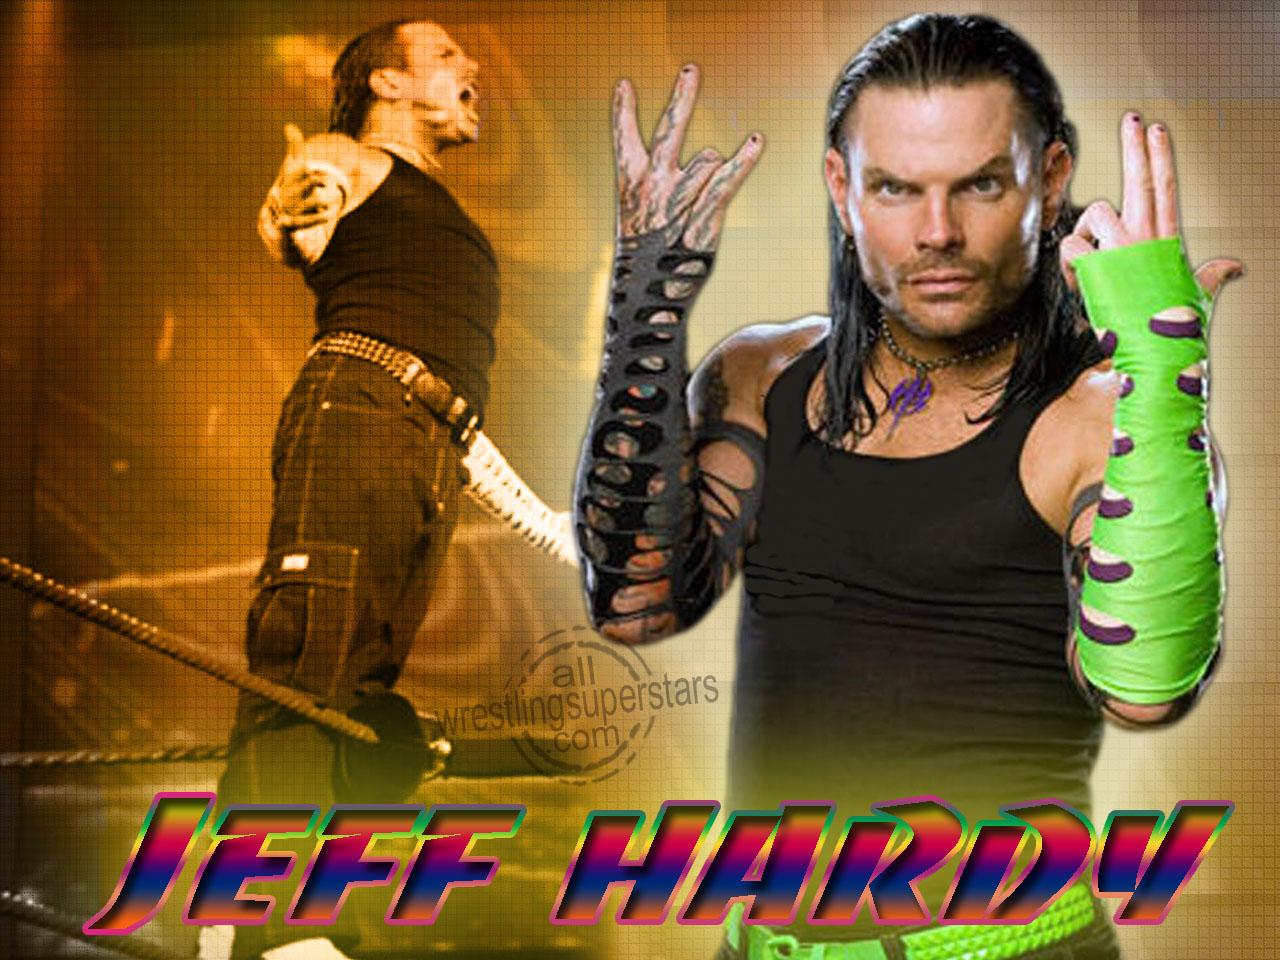 Wwe Wrestling Superstar Jeff Hardy